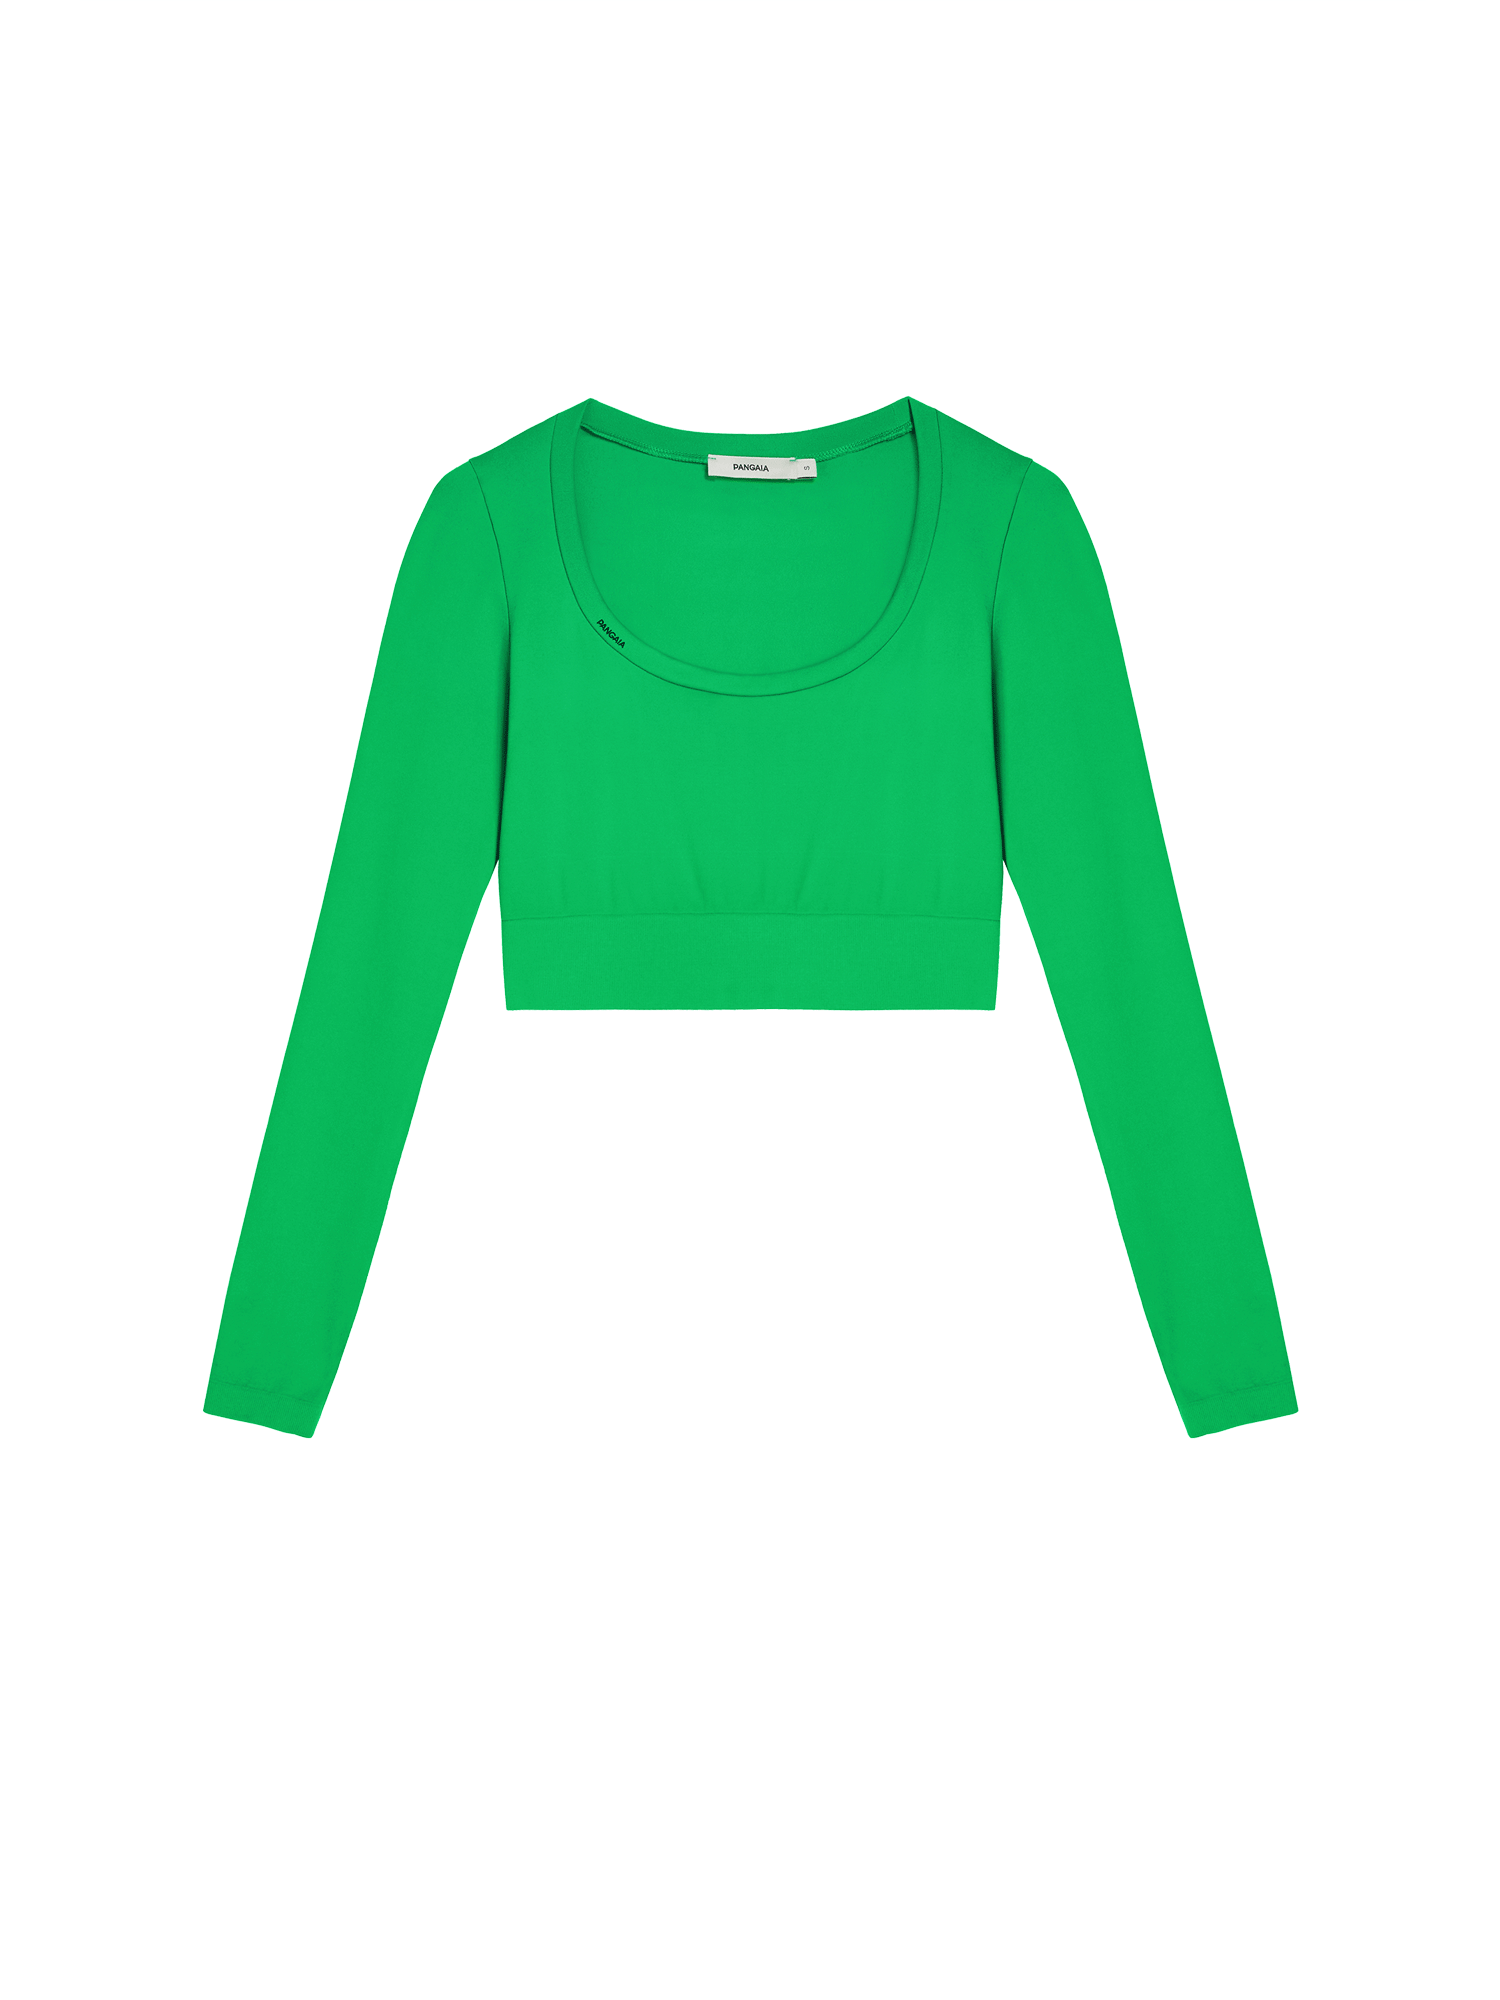 Activewear Womens Cropped Top Jade Green-packshot-3